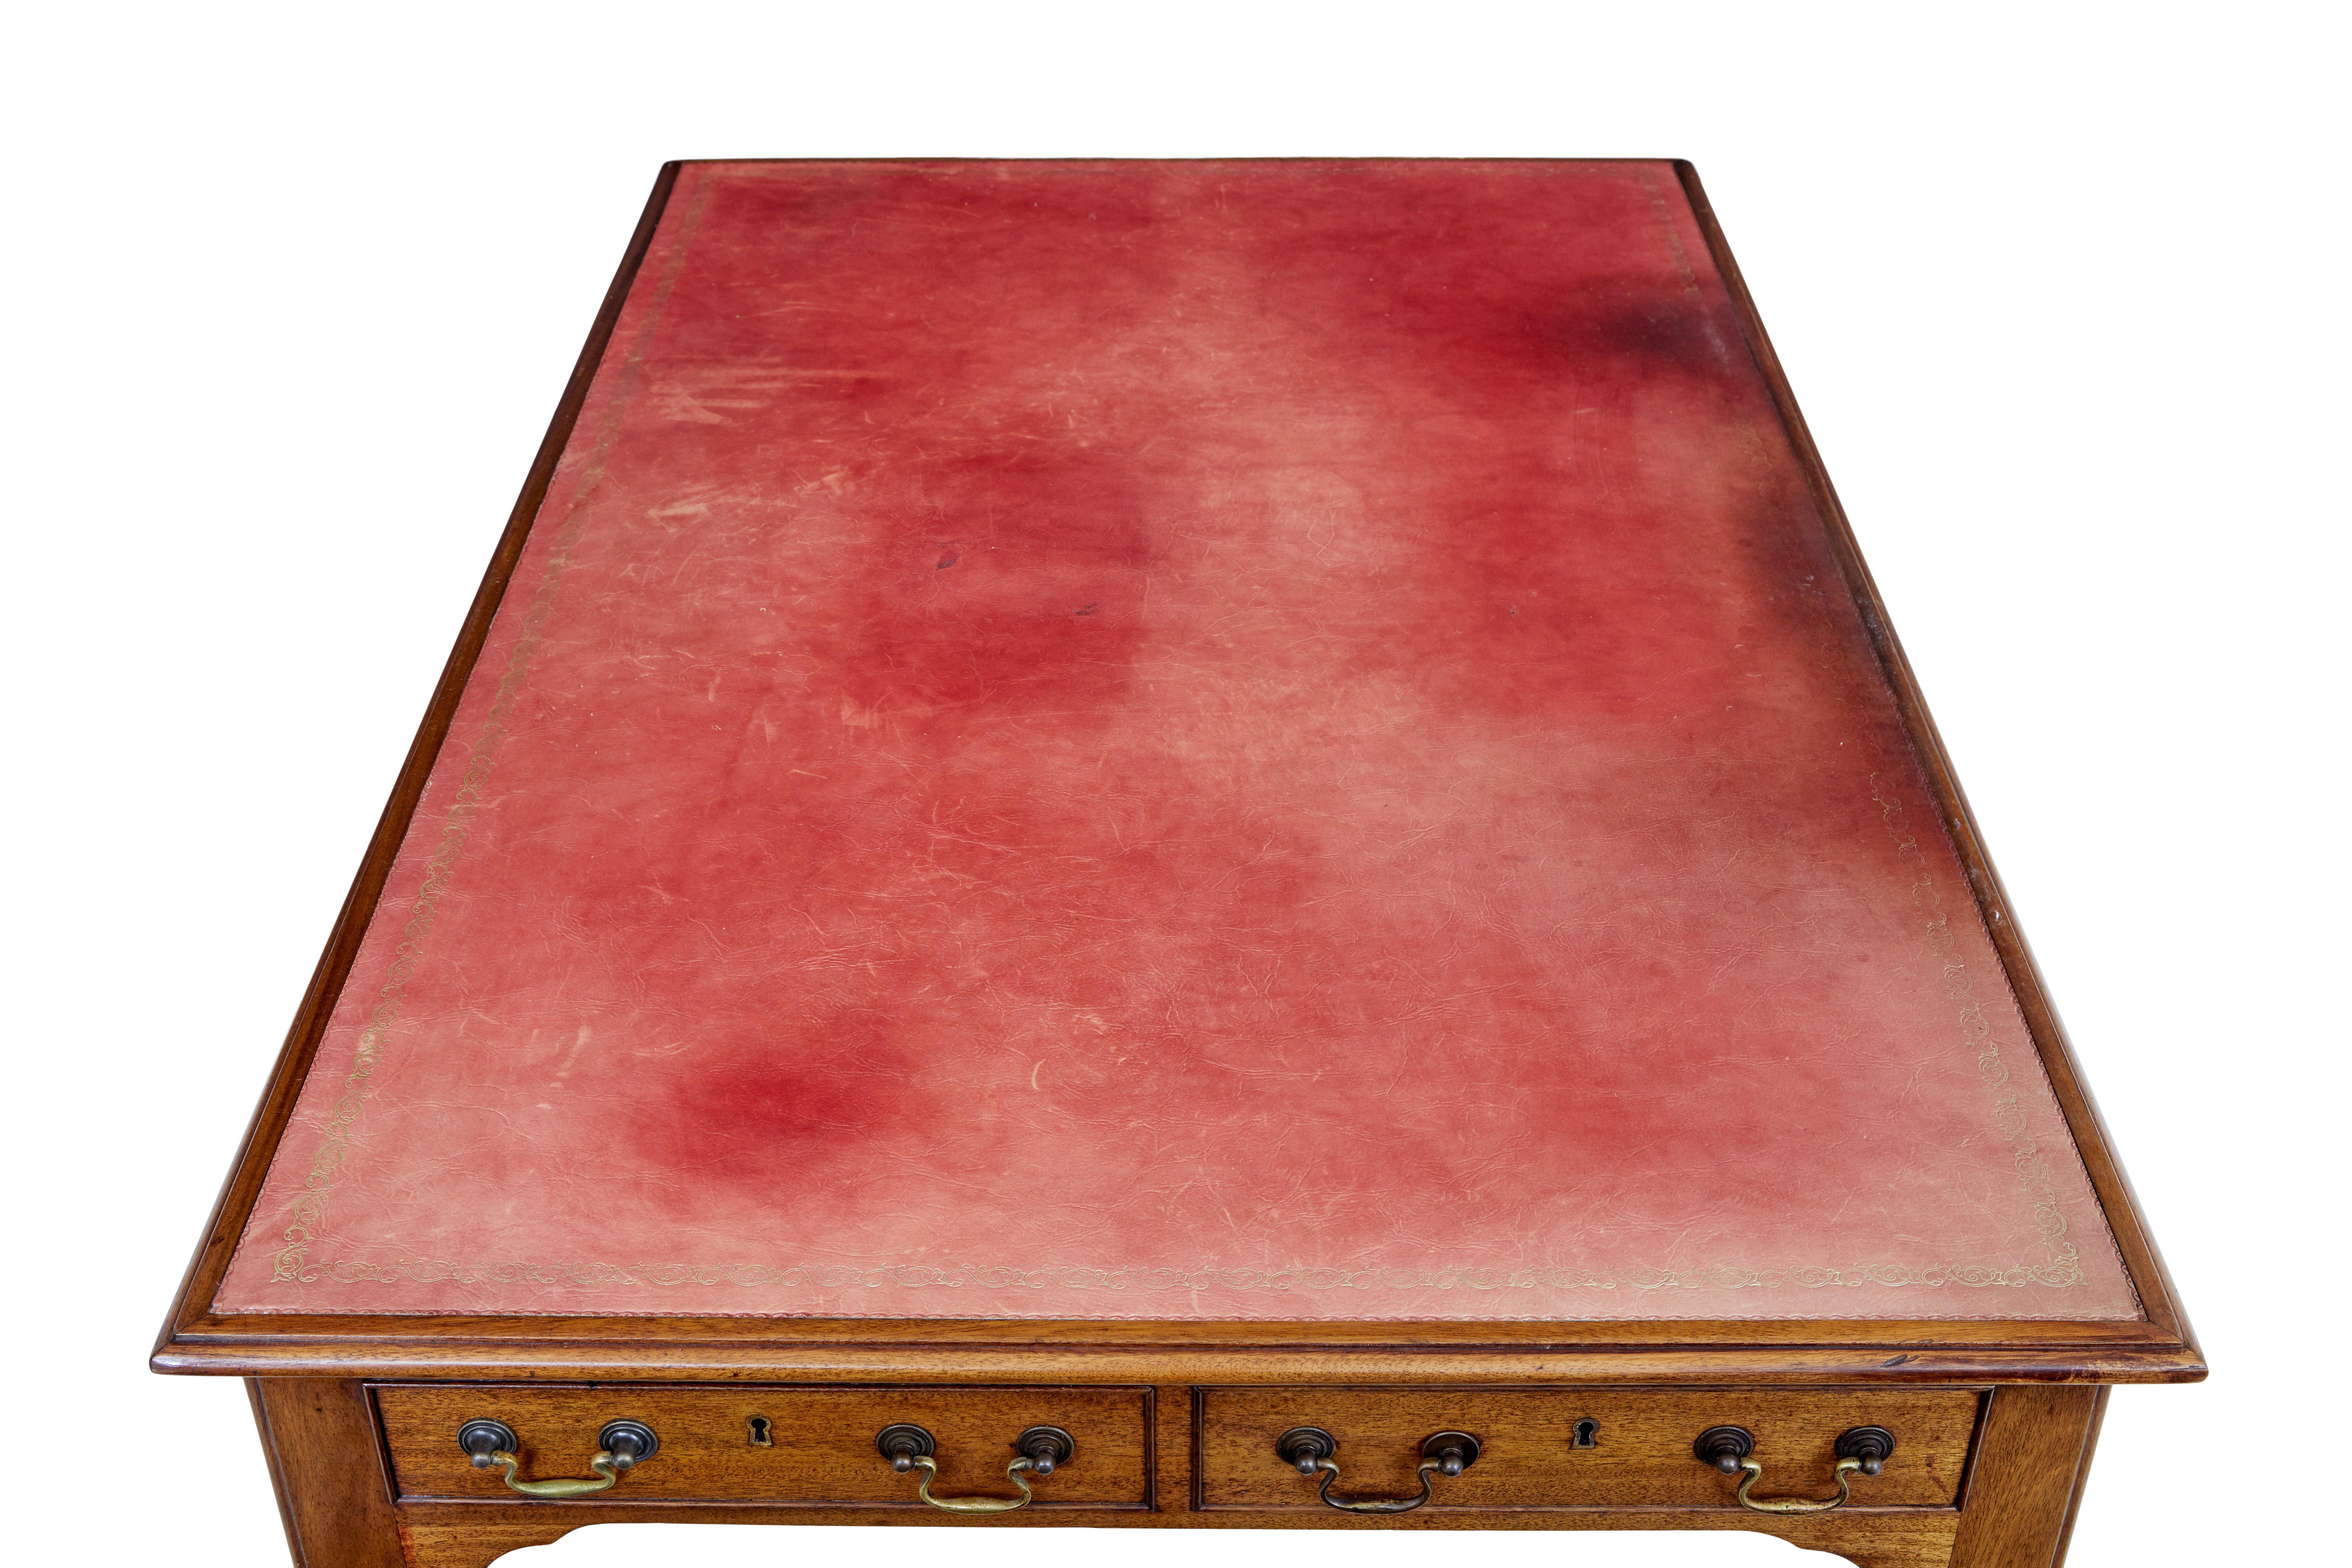 Mahagonischreibtisch mit Lederplatte aus dem frühen 20. Jahrhundert, um 1910.

Originale rote Lederschreibfläche mit Goldprägung, mit deutlichen Gebrauchsspuren.  Ausgestattet mit 3 Schubladen über dem Knie für die Lagerung, Schreibtisch ist mit